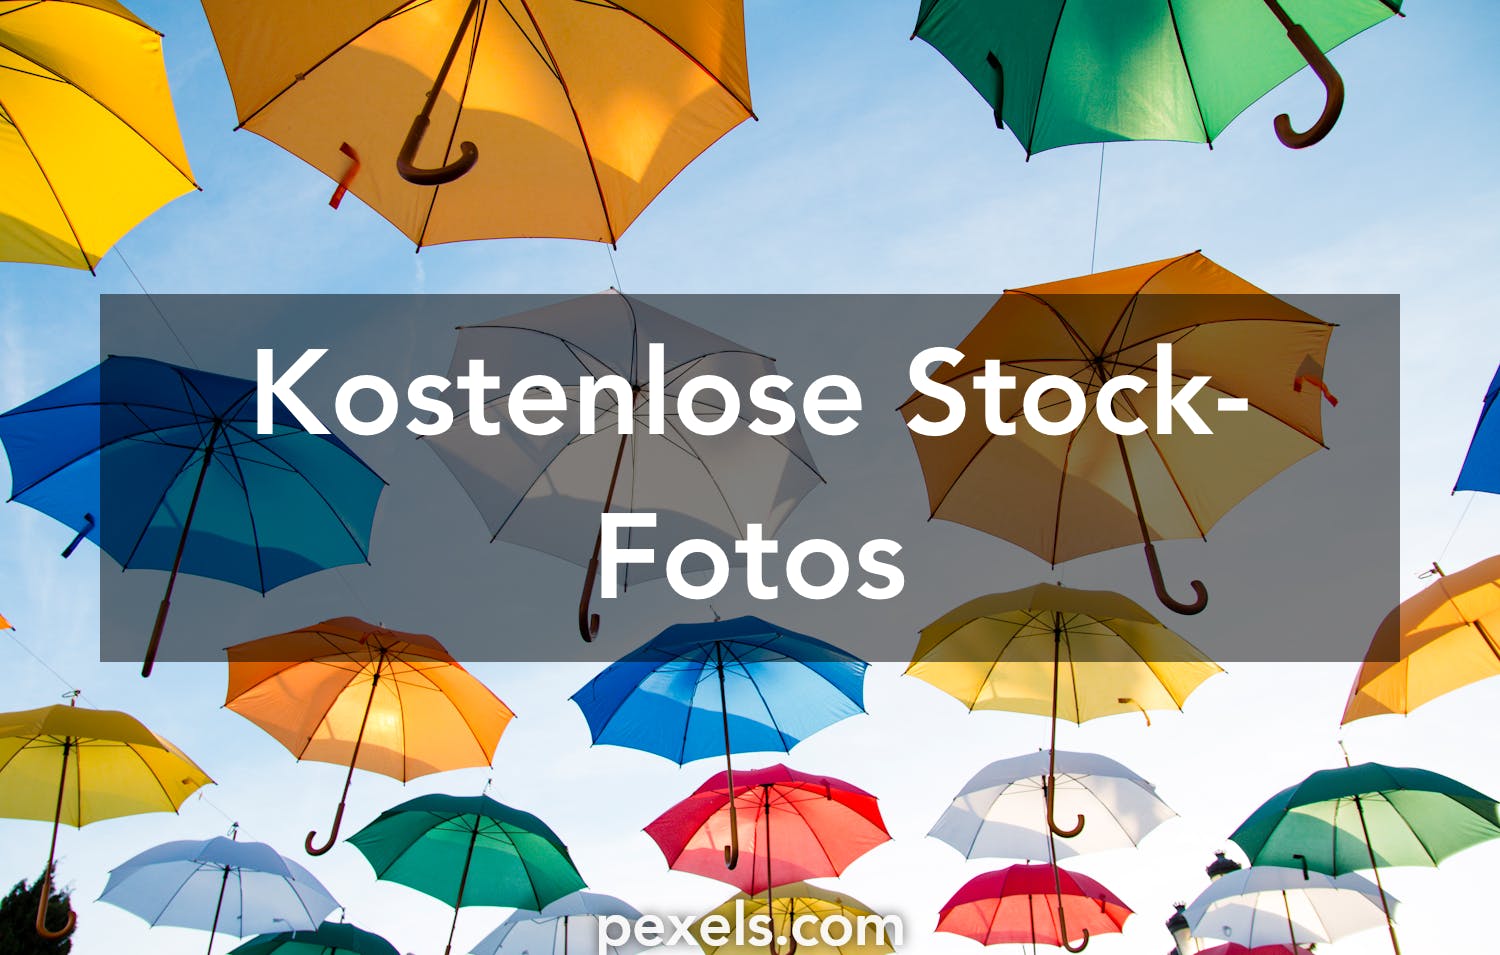 1000 Regenschirm Fotos Pexels Kostenlose Stock Fotos